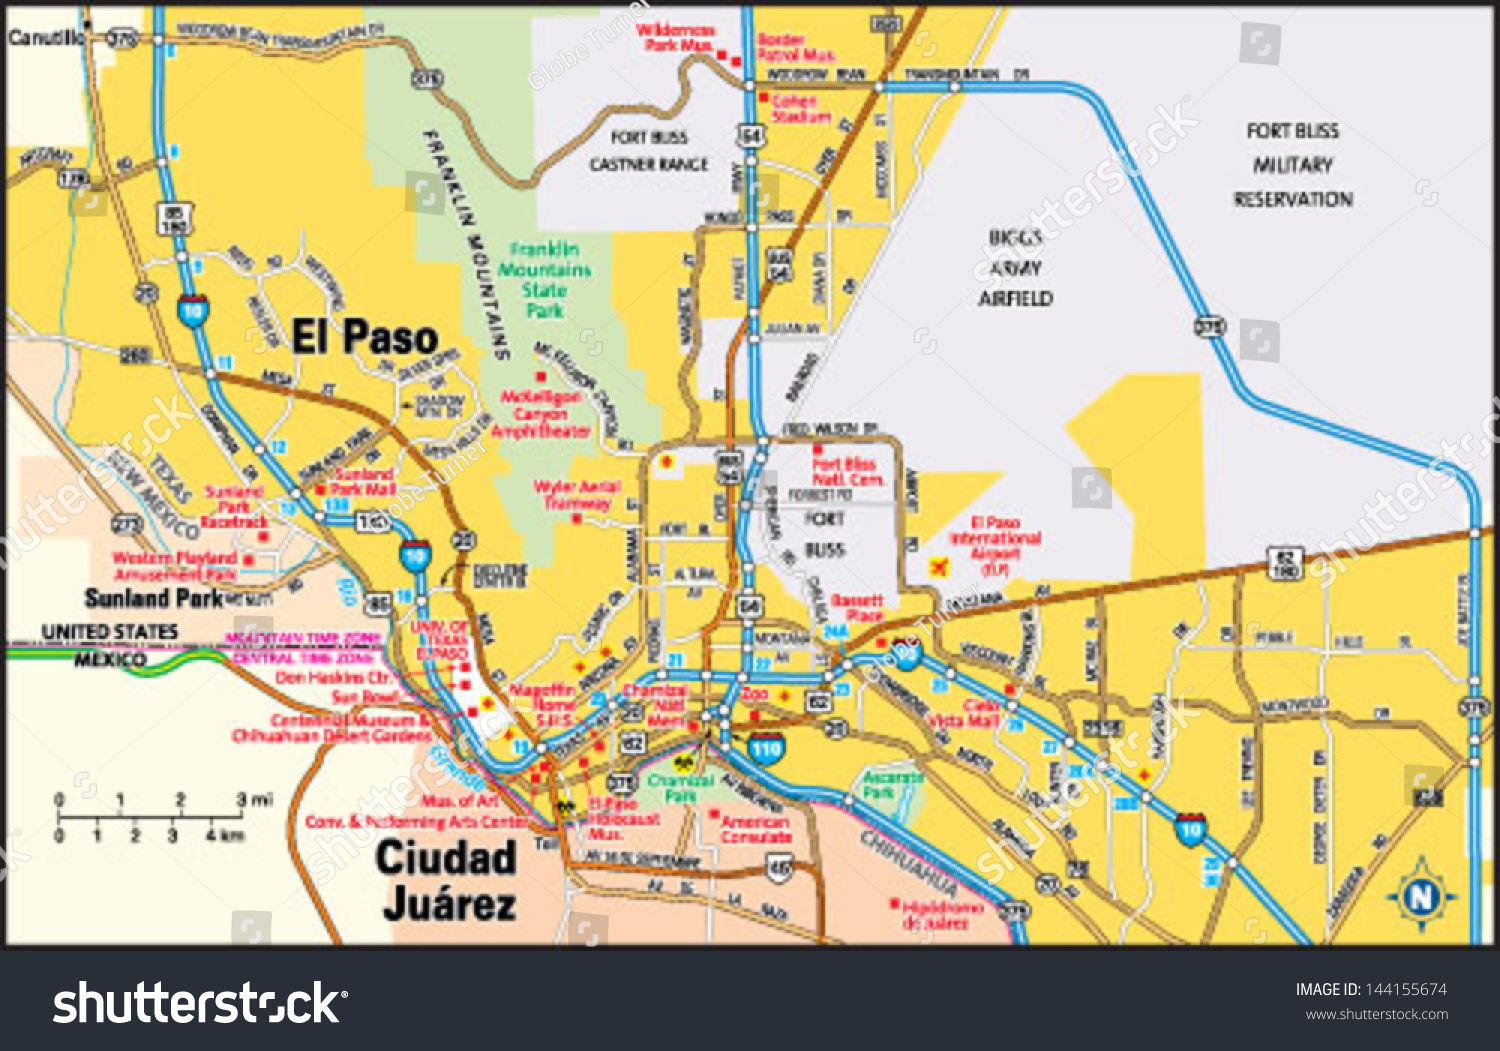 El Paso Region Map